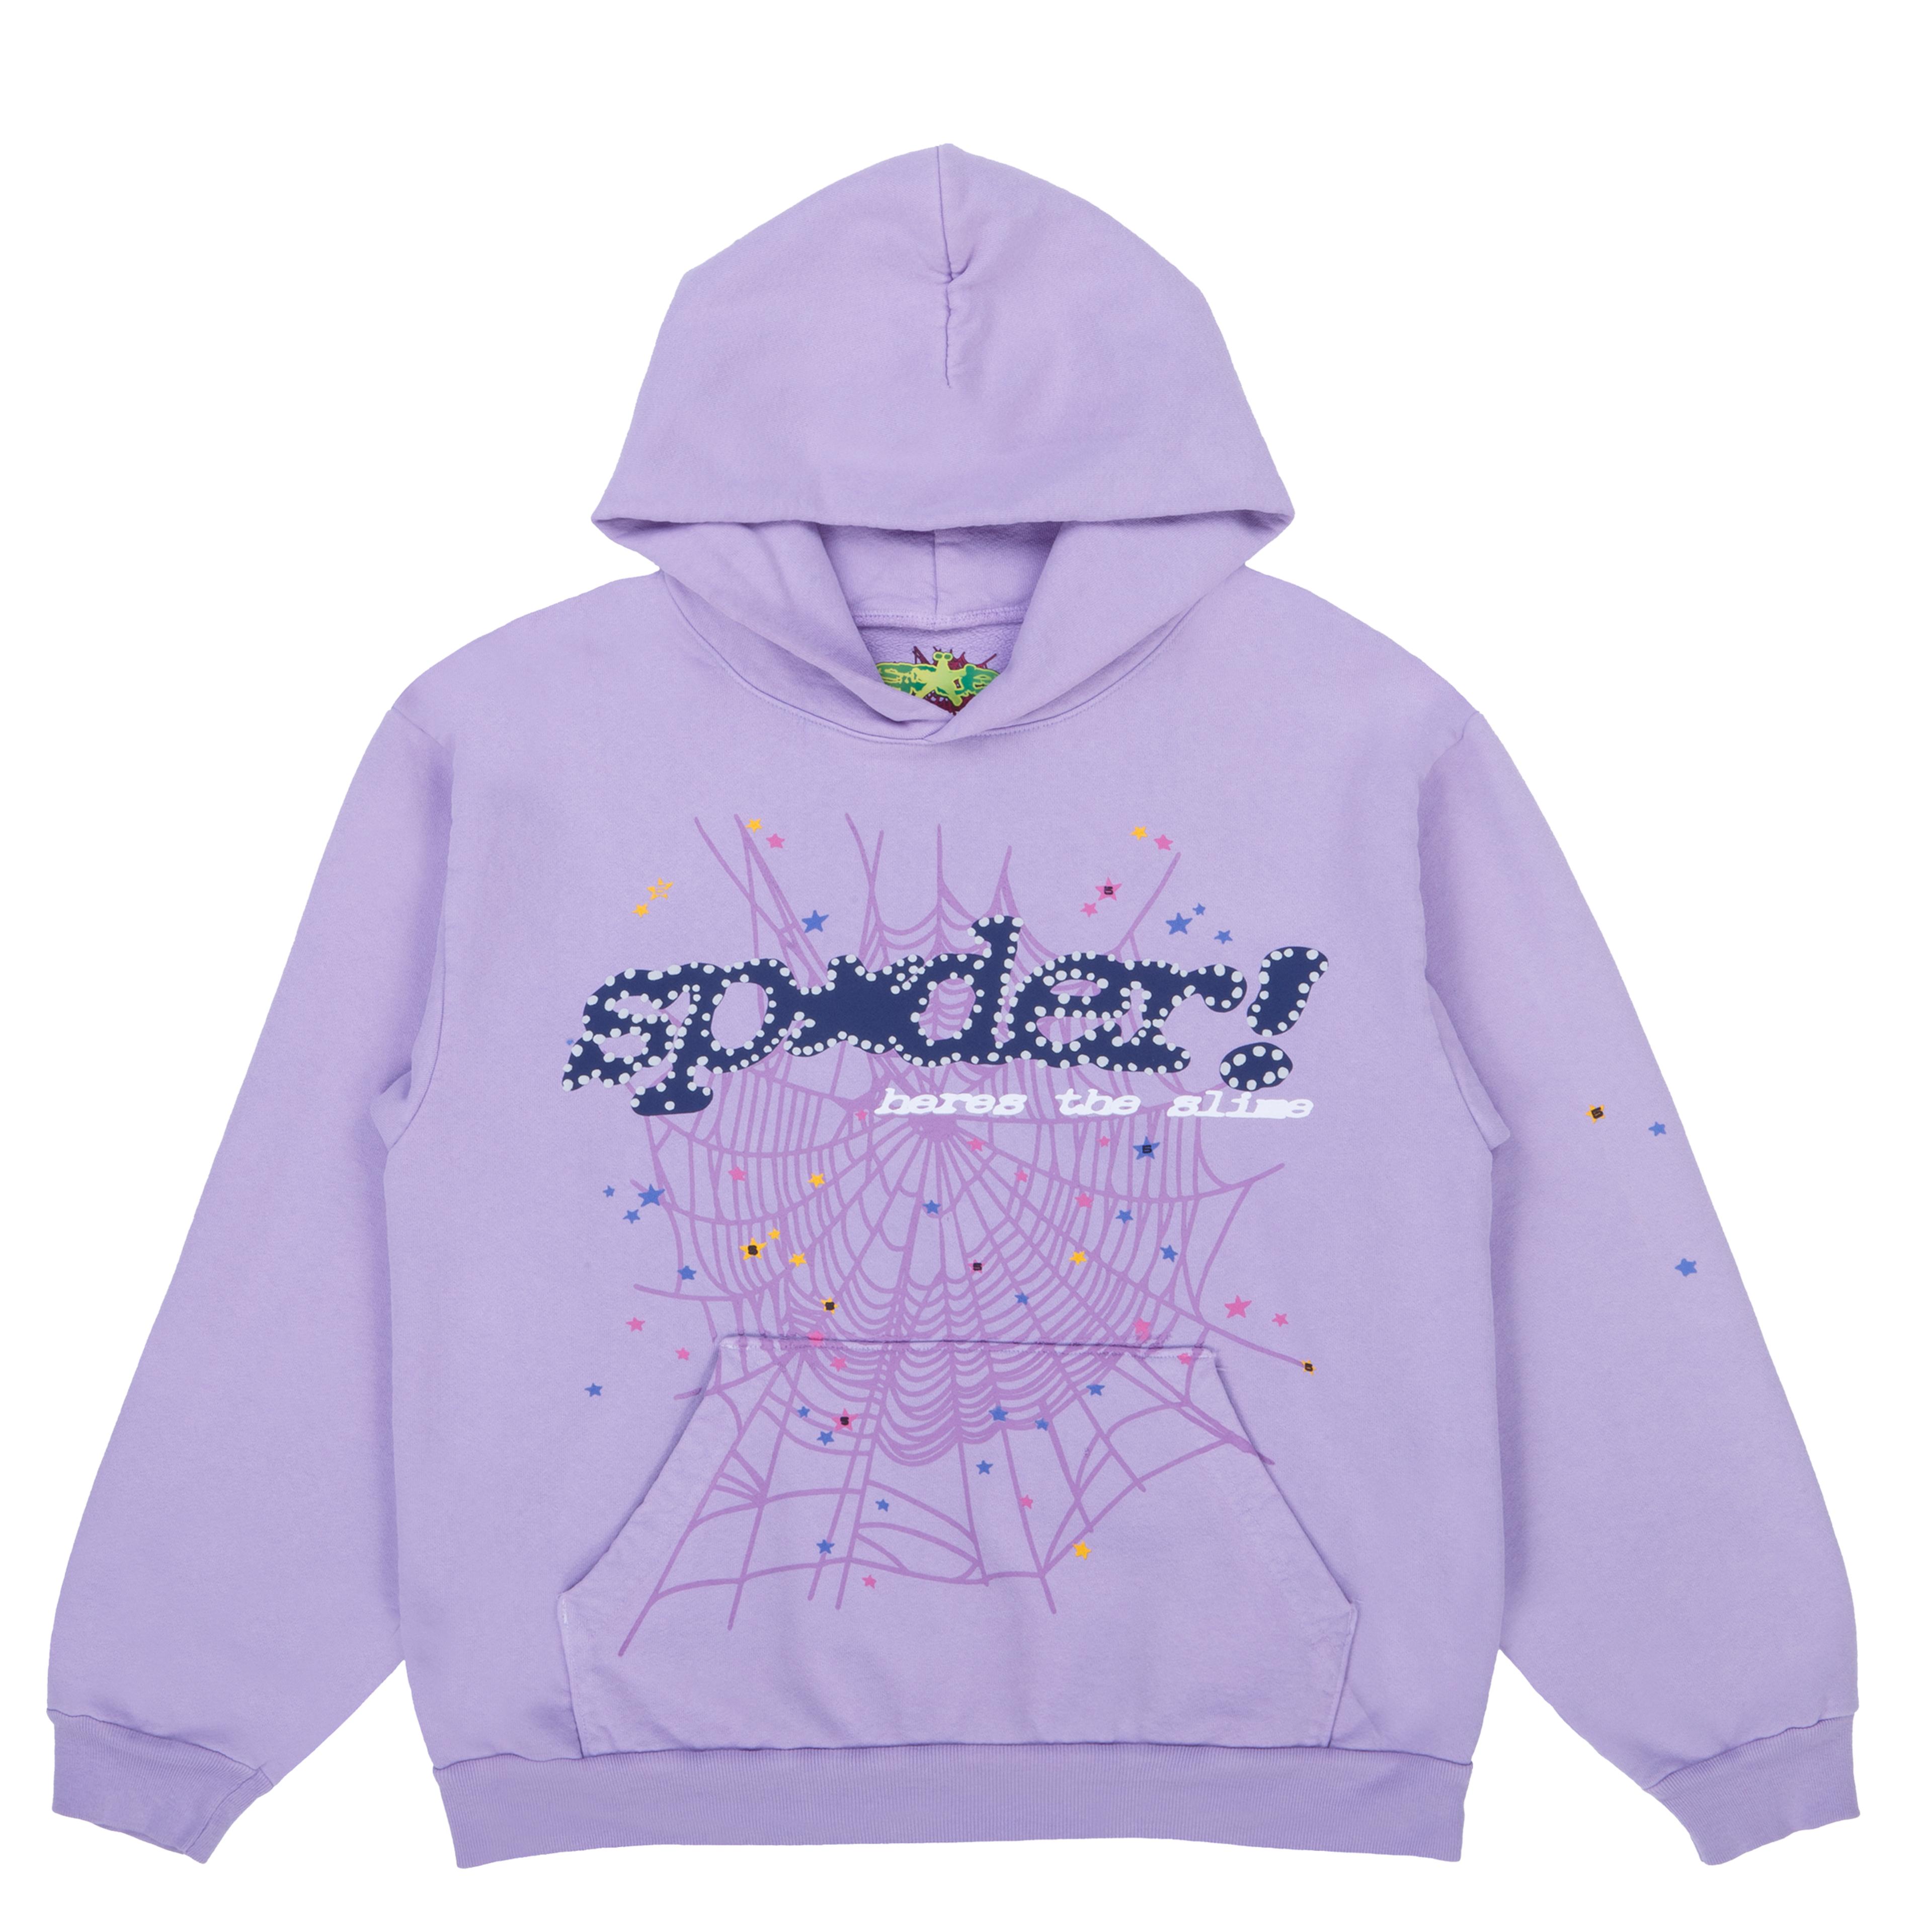 Sp5der Worldwide Sweatshirt Acai